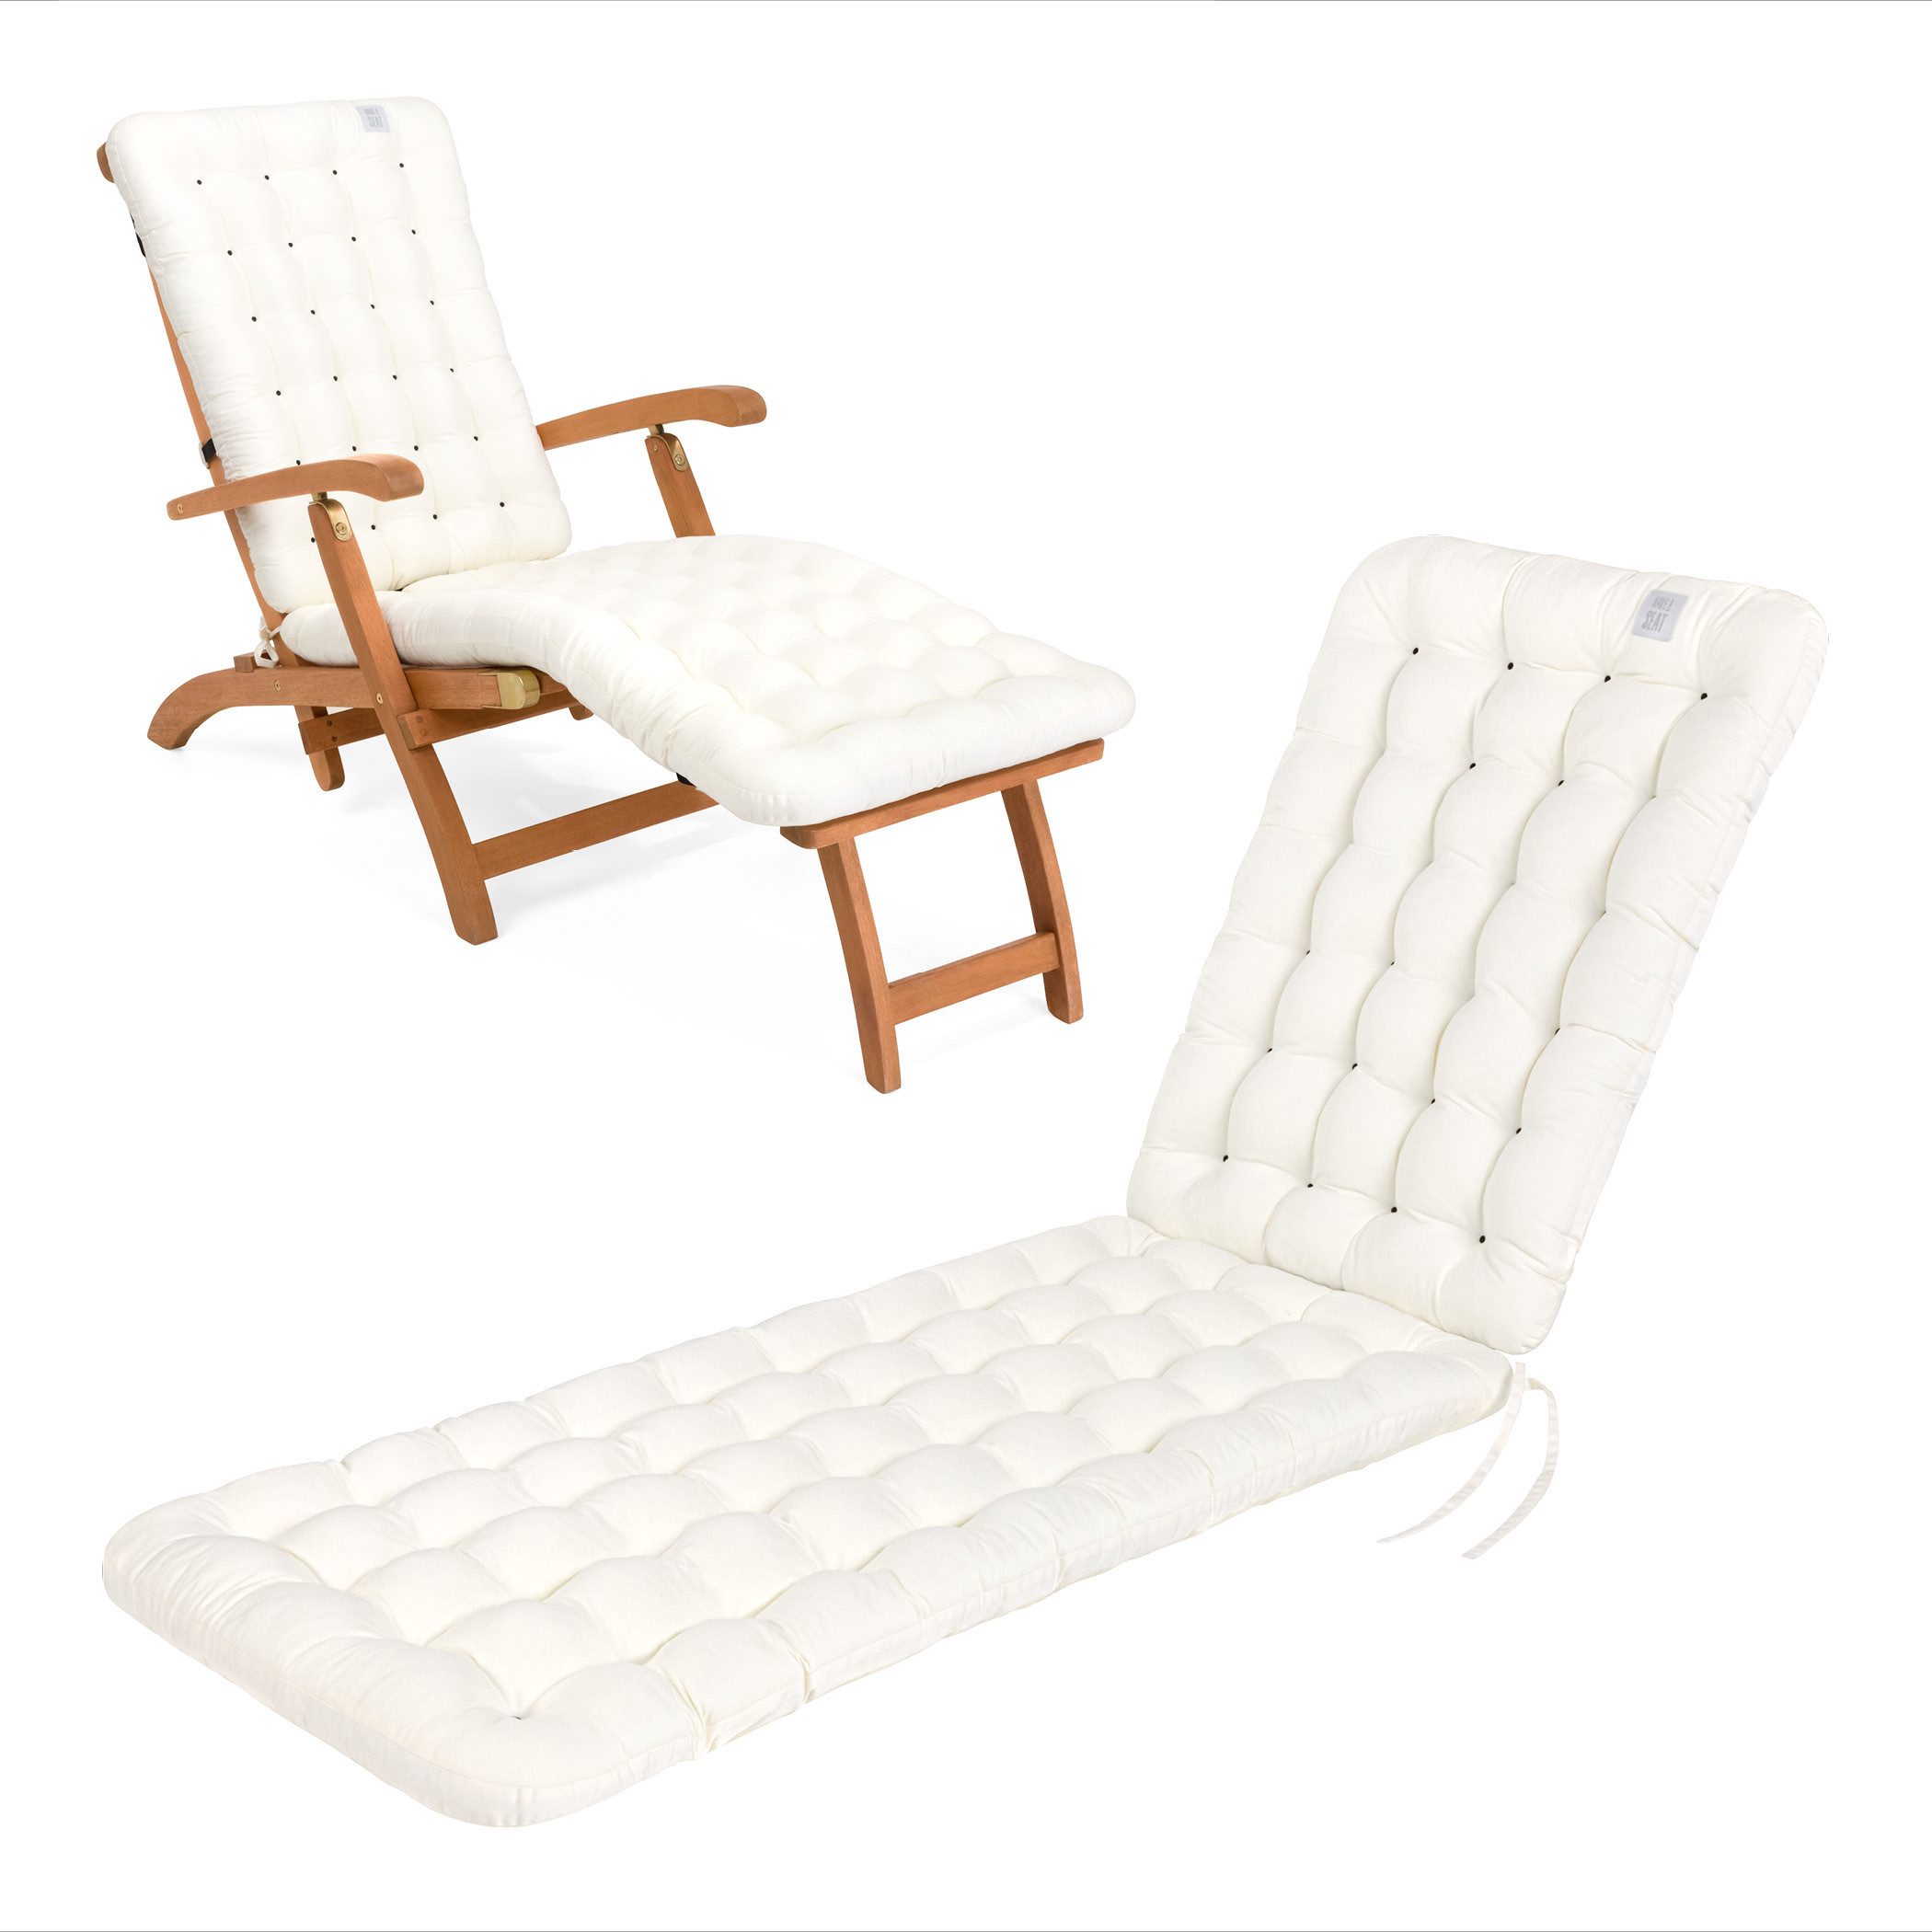 HAVE A SEAT Living Liegenauflage - bequeme Premium Polsterauflage für Liegestühle / Deckchairs, orthopädisch, wetterfest, UV-Schutz (8/10), komplett waschbar bis 95°C